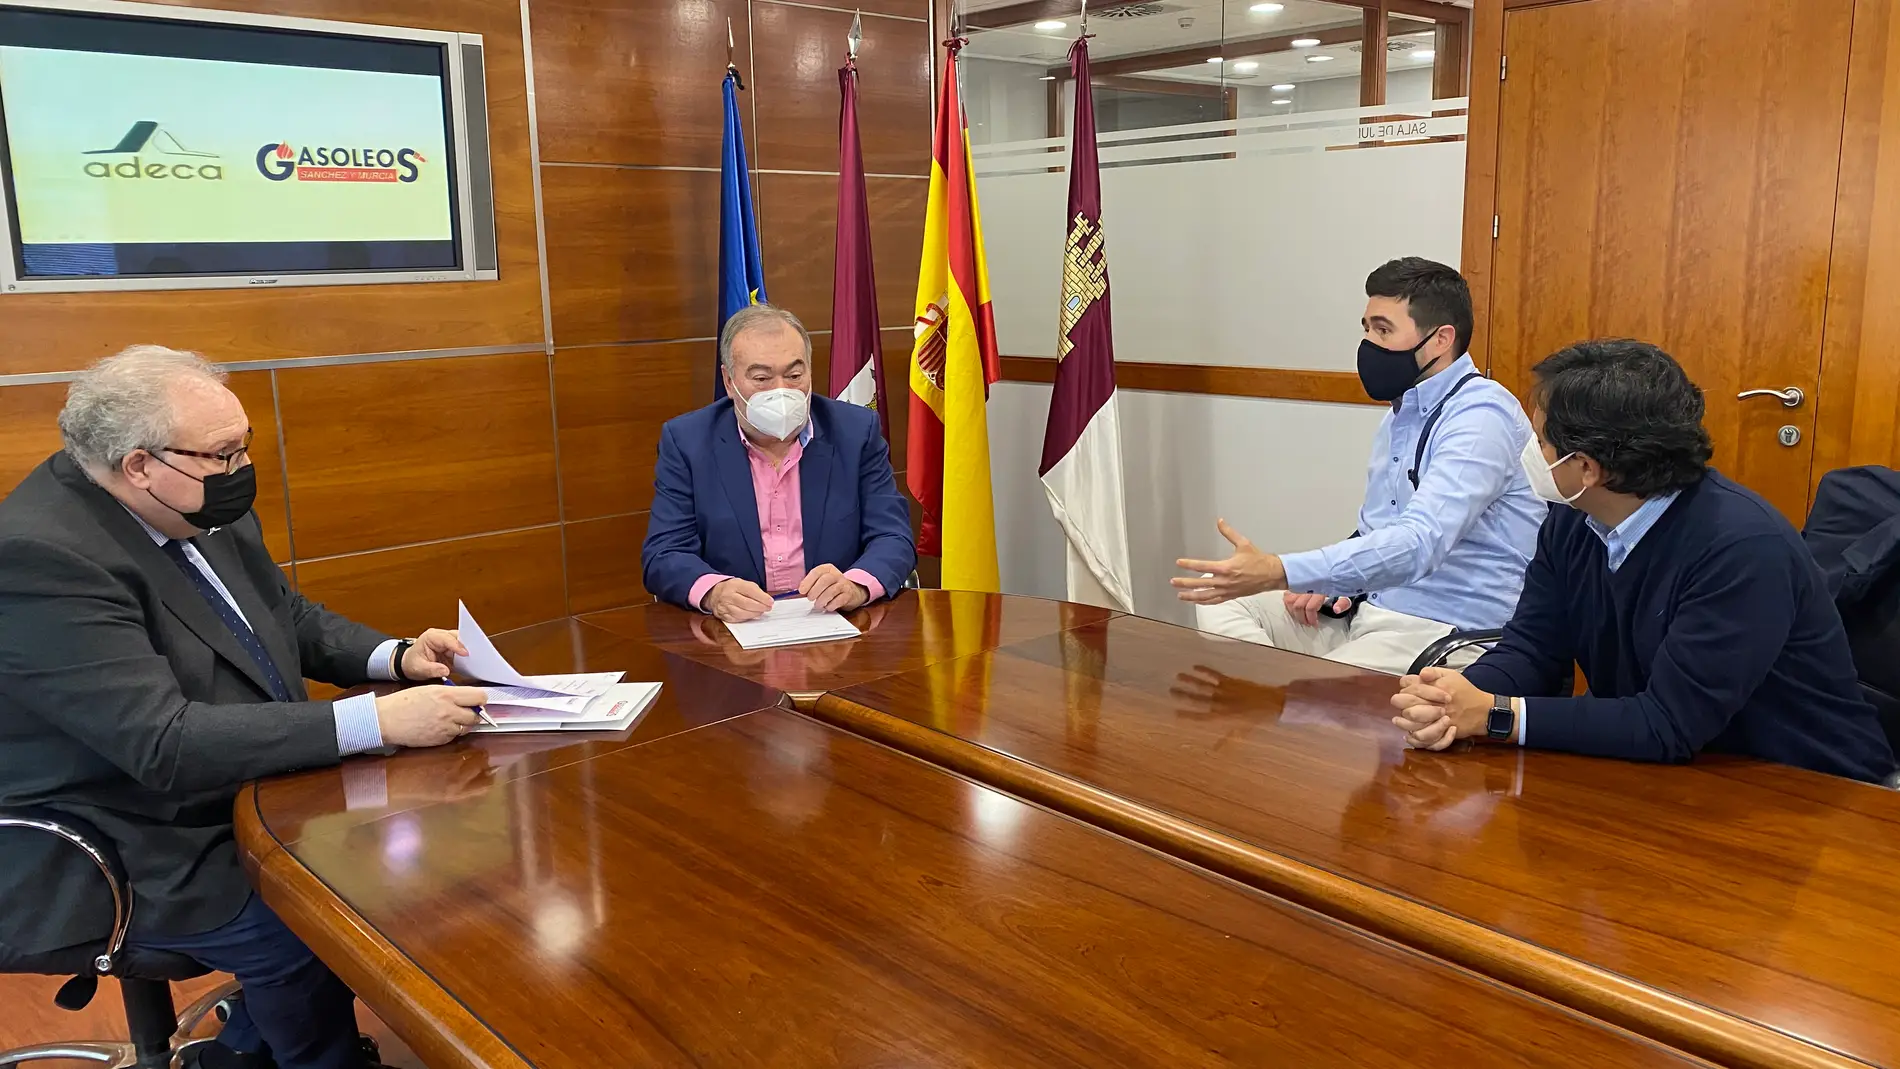 Acuerdo de colaboración entre Adeca y Gasóleos Sánchez Murcia con ventajosas condiciones para sus asociados